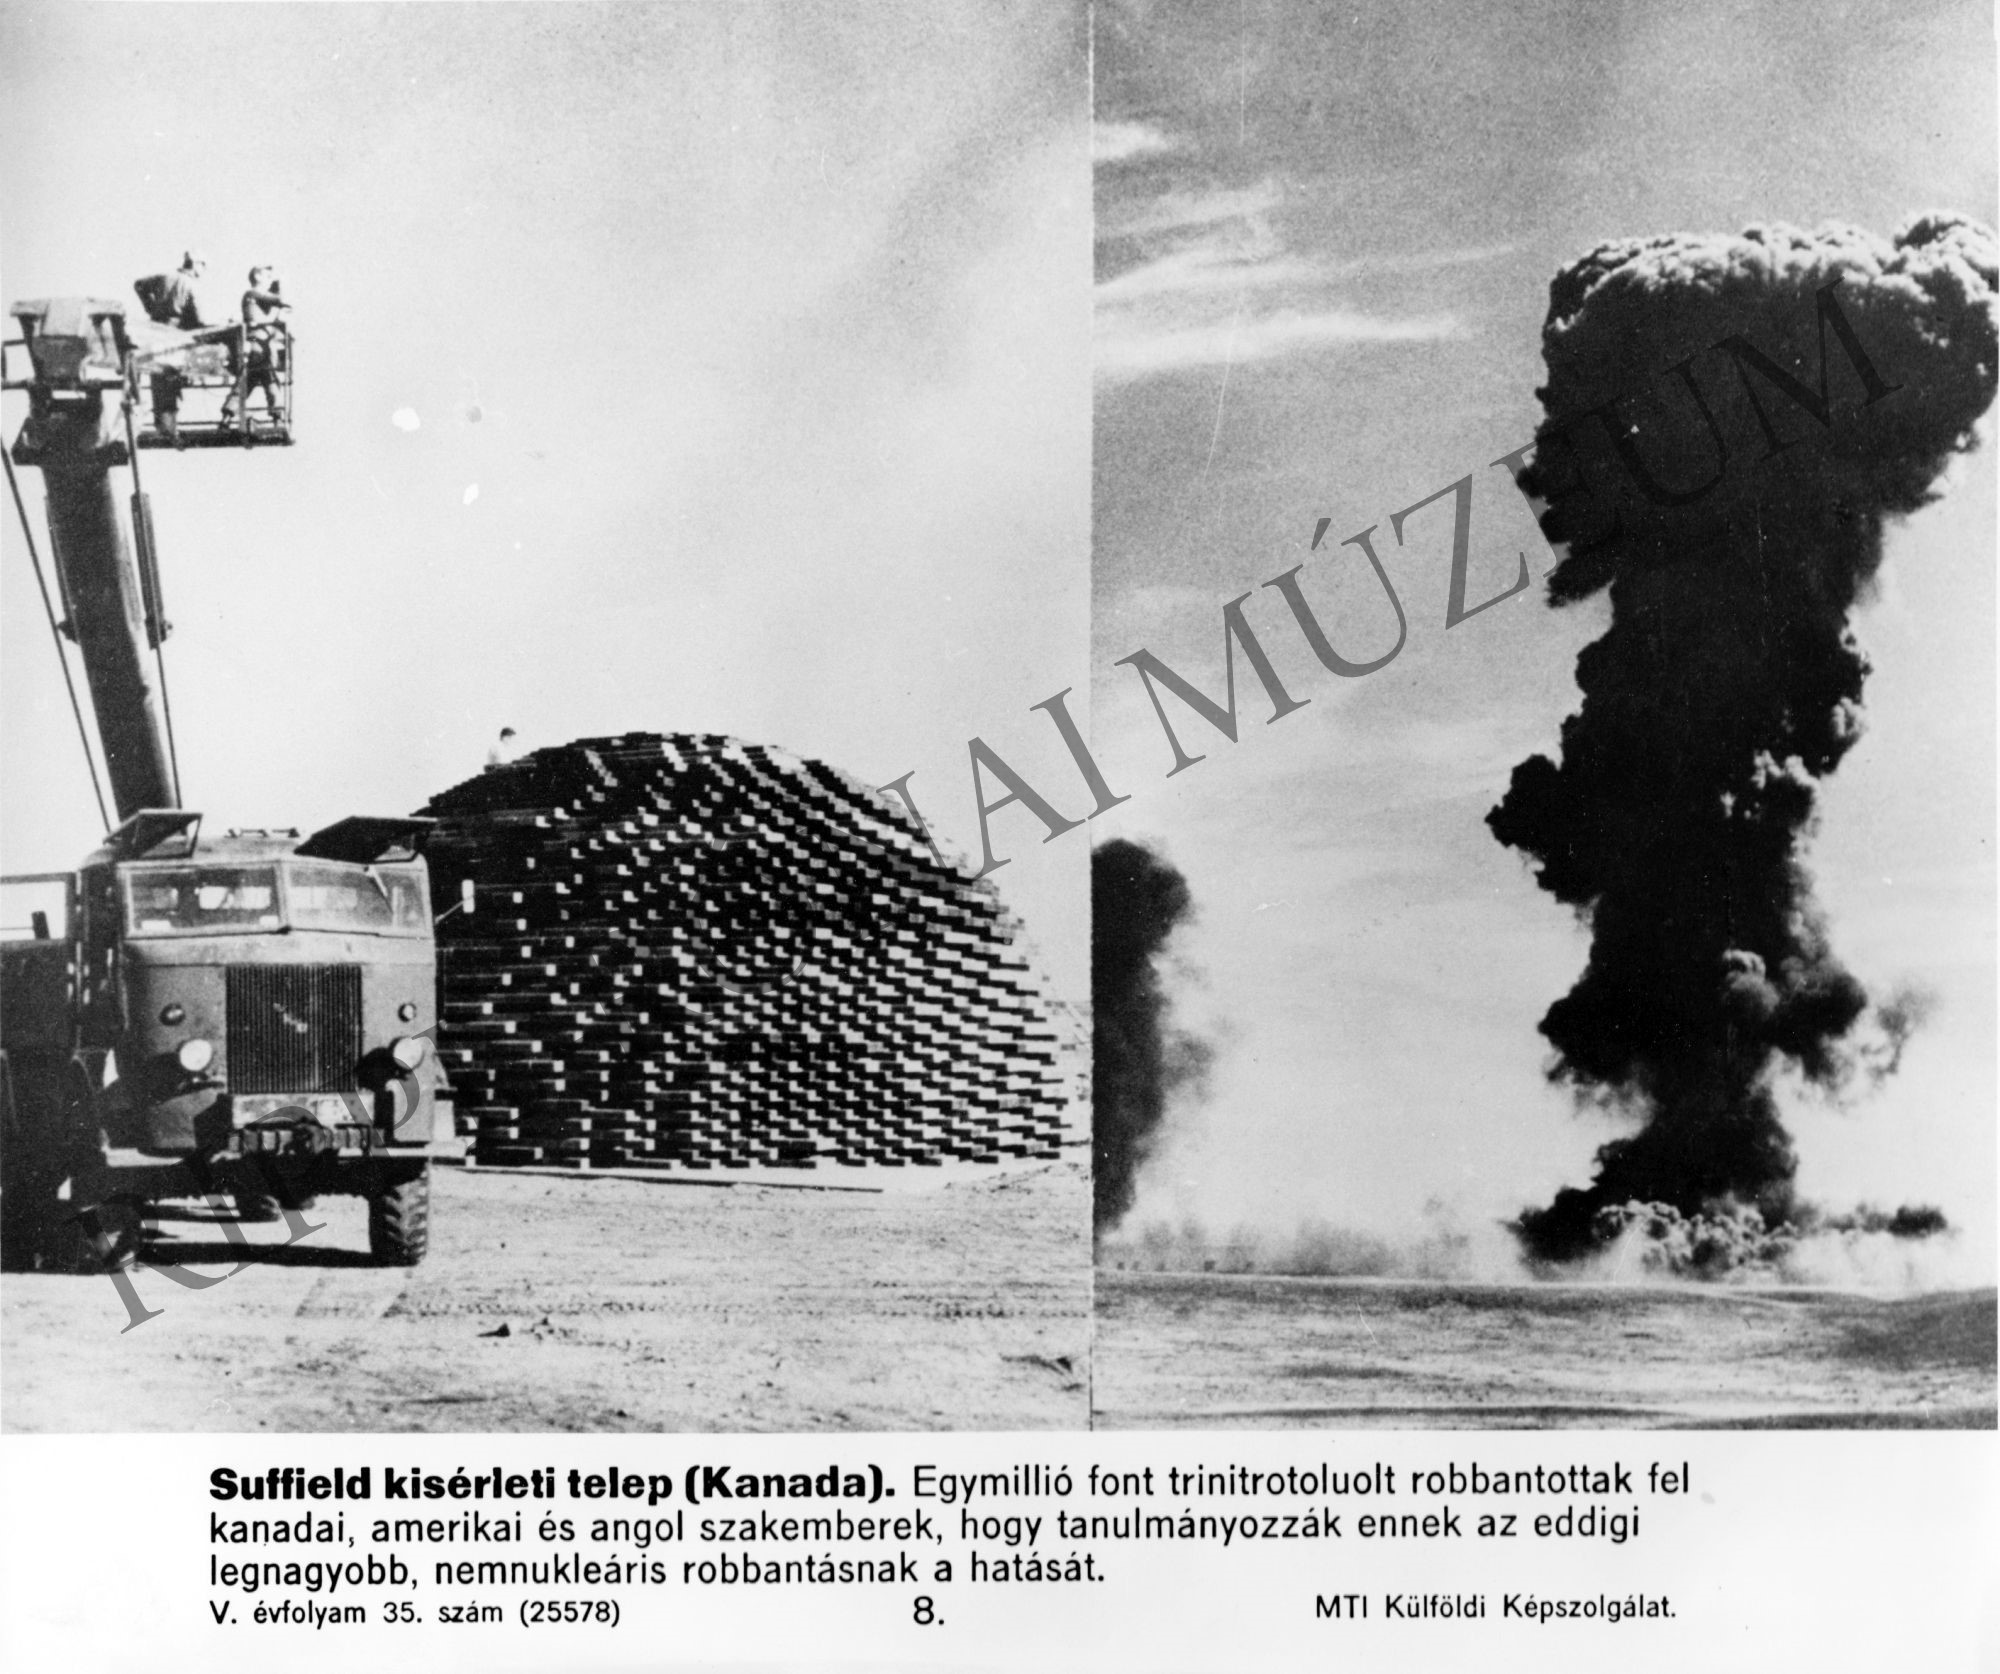 TNT (trinitrotoluolt) robbantási kísérlet Kanadában (Rippl-Rónai Múzeum CC BY-NC-SA)